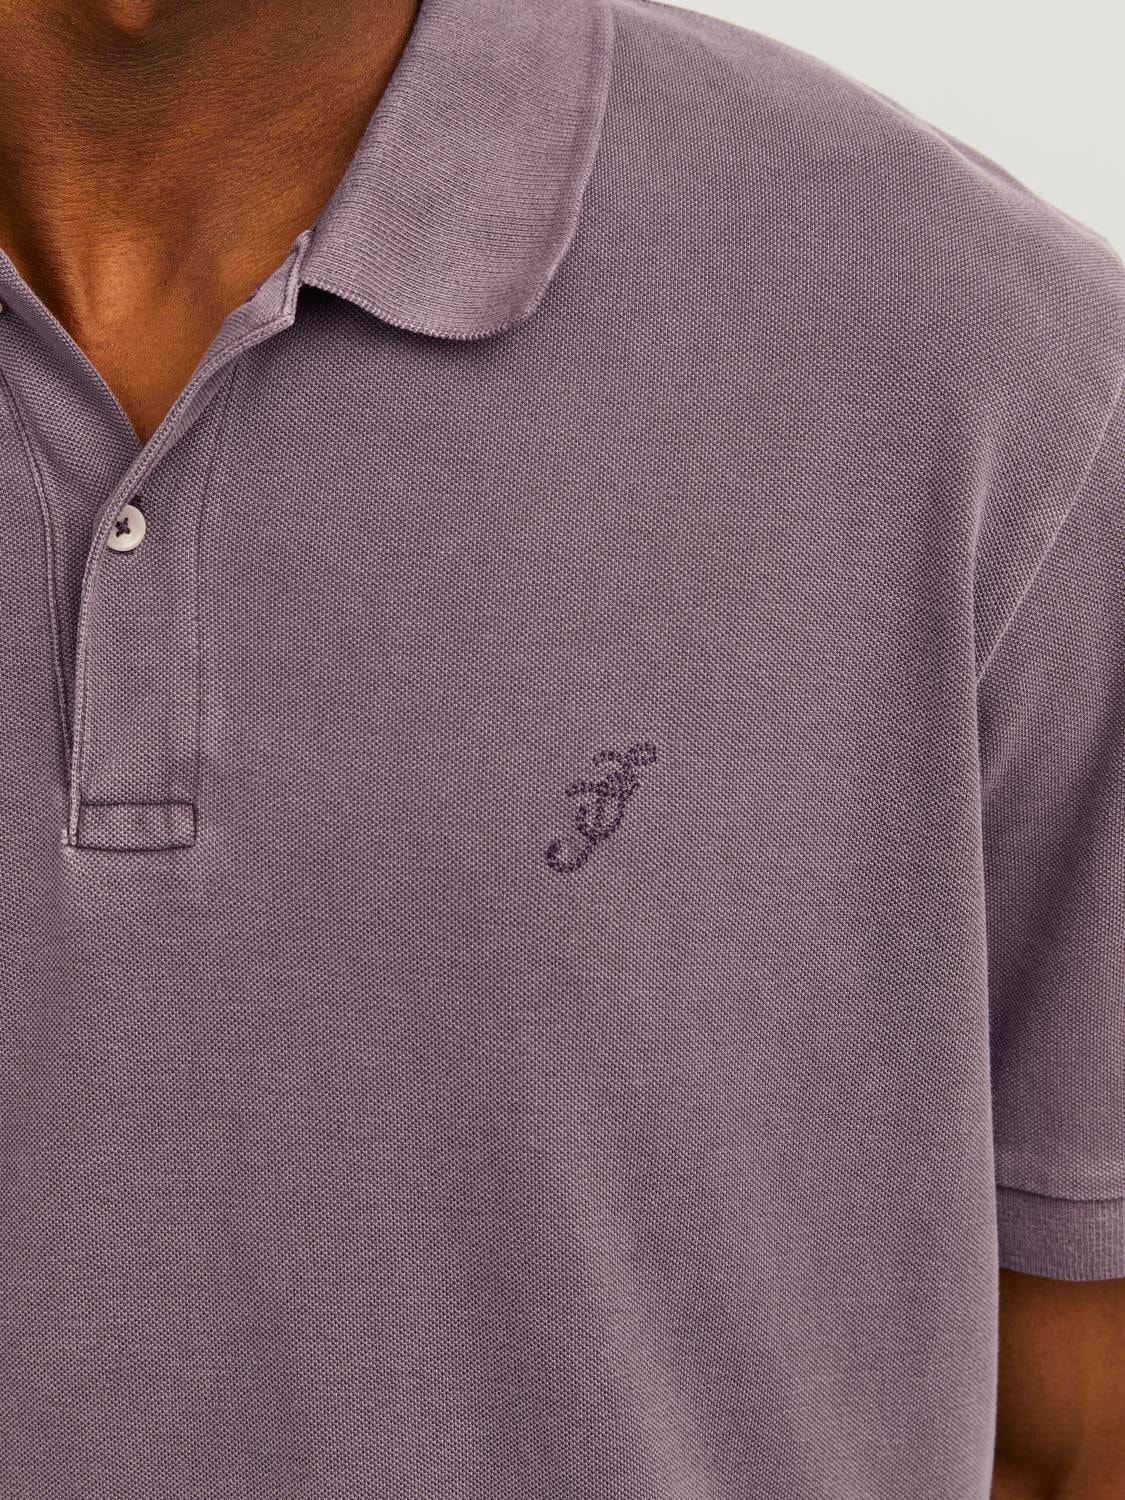 Jack & Jones T-shirt Uni Polo -Plum Perfect - 12257315